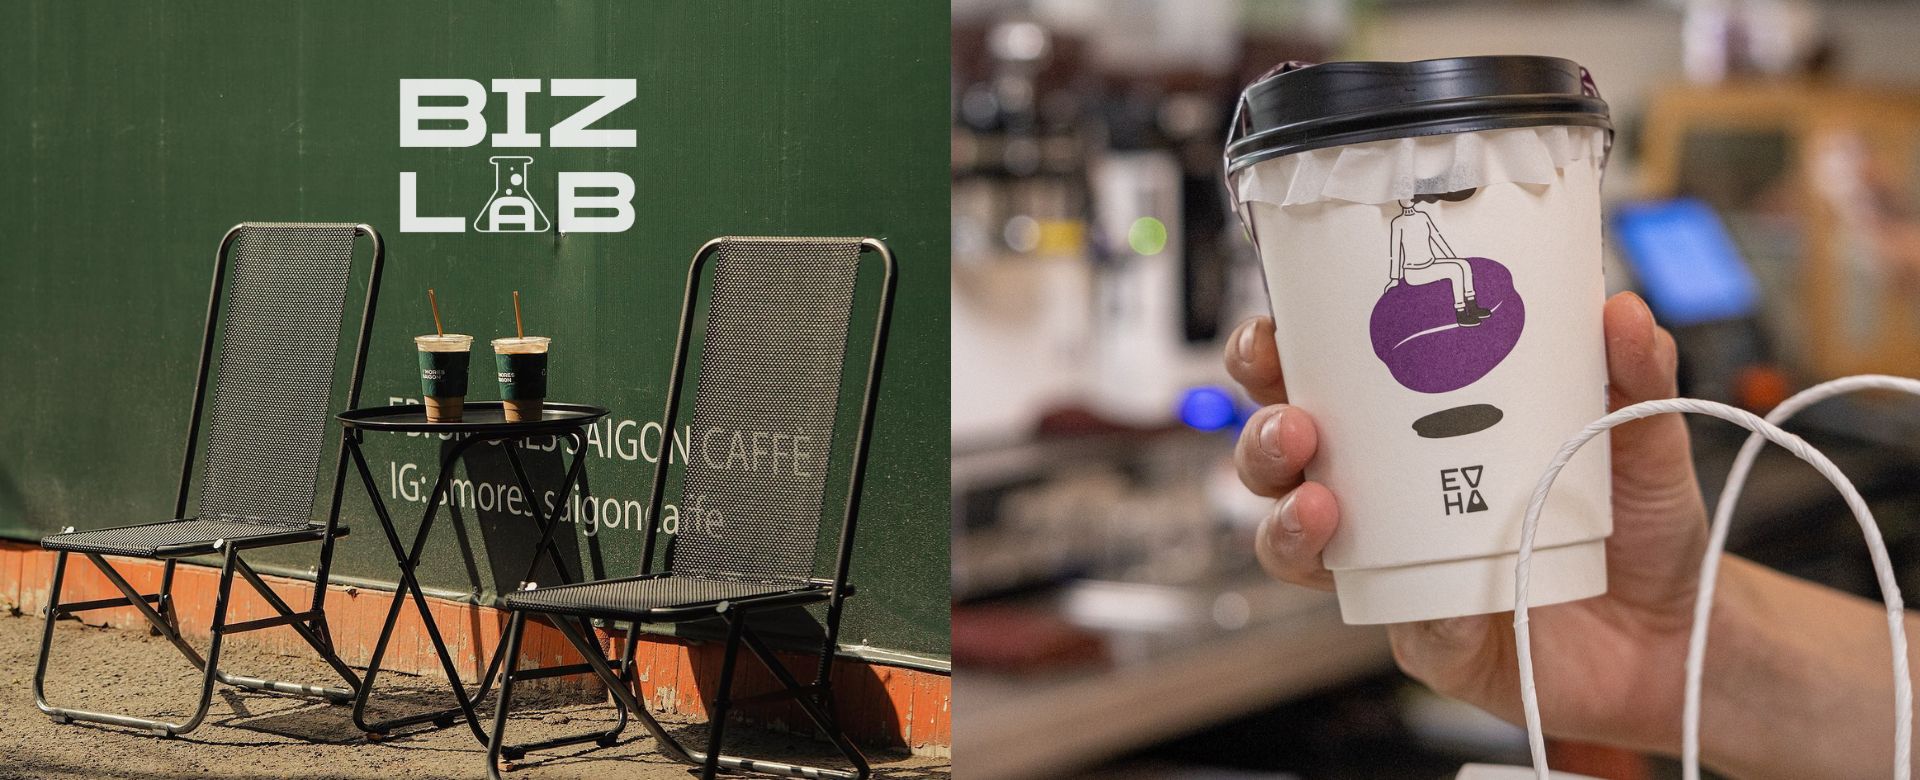 BizLab: Khi câu chuyện kinh doanh cà phê được “kể” bằng màu sắc